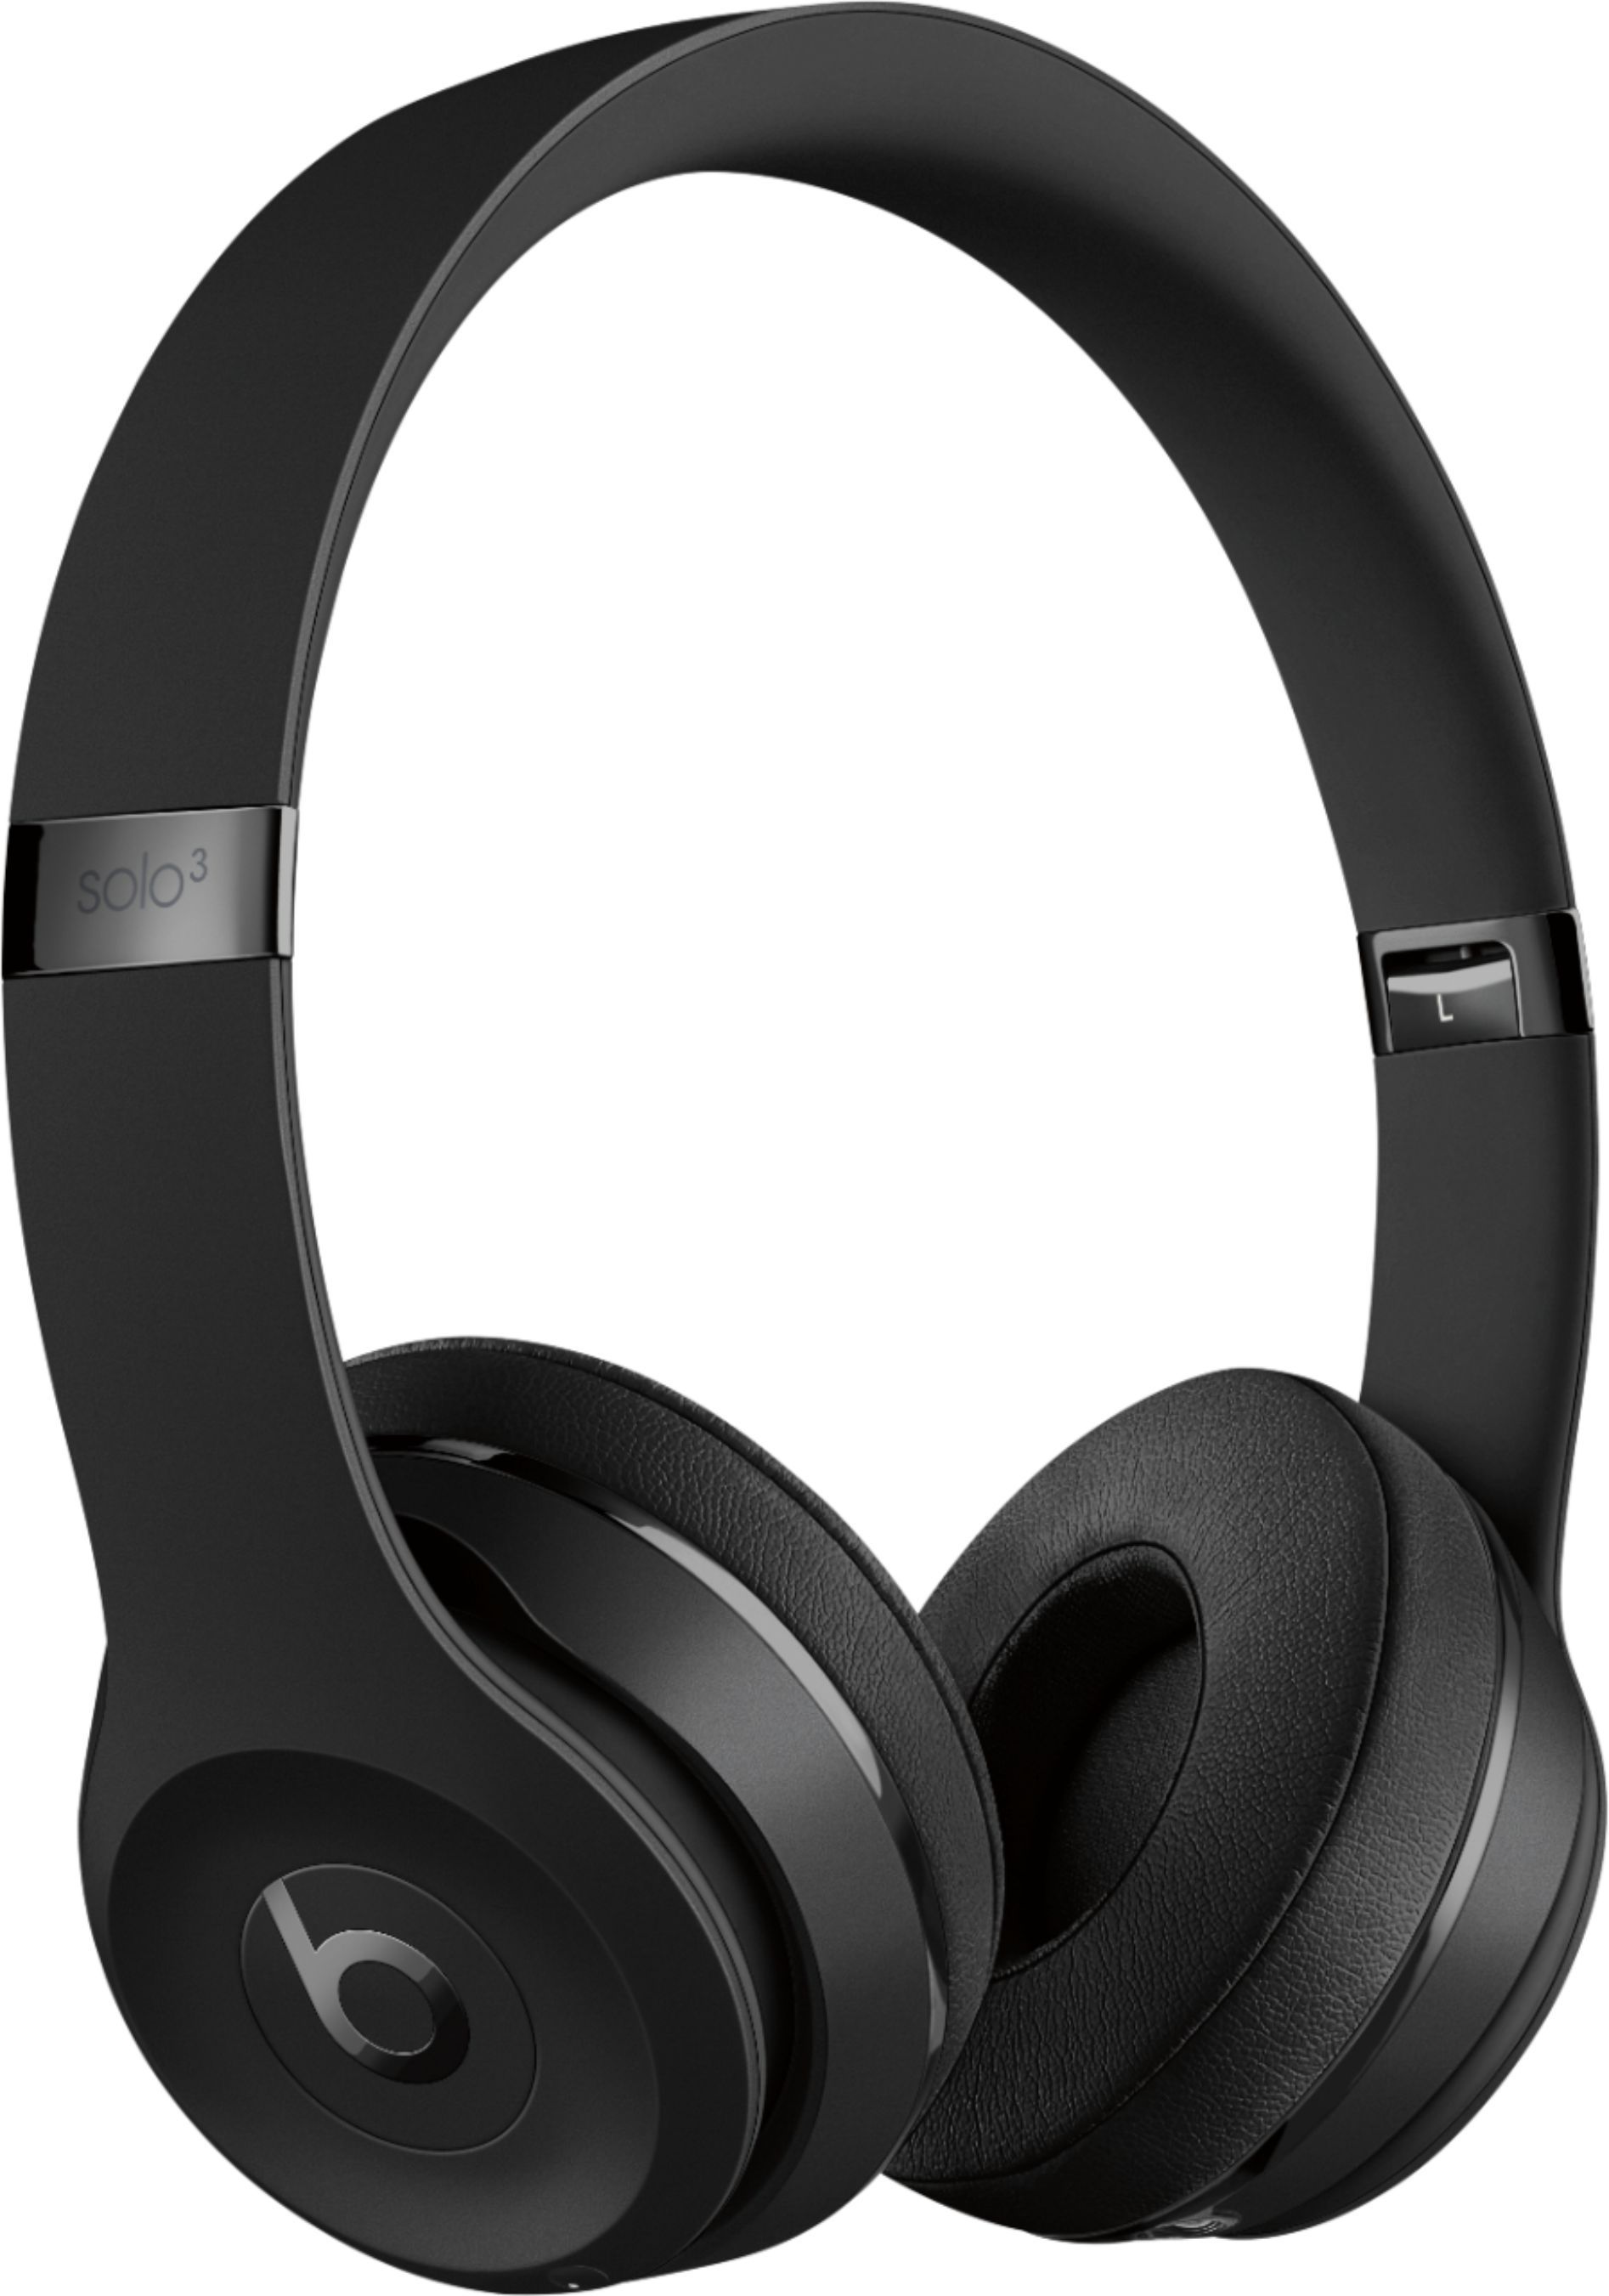 Beats Solo³ Wireless On-Ear Headphones Matte Black MX432LL/A - Best Buy | Best Buy U.S.